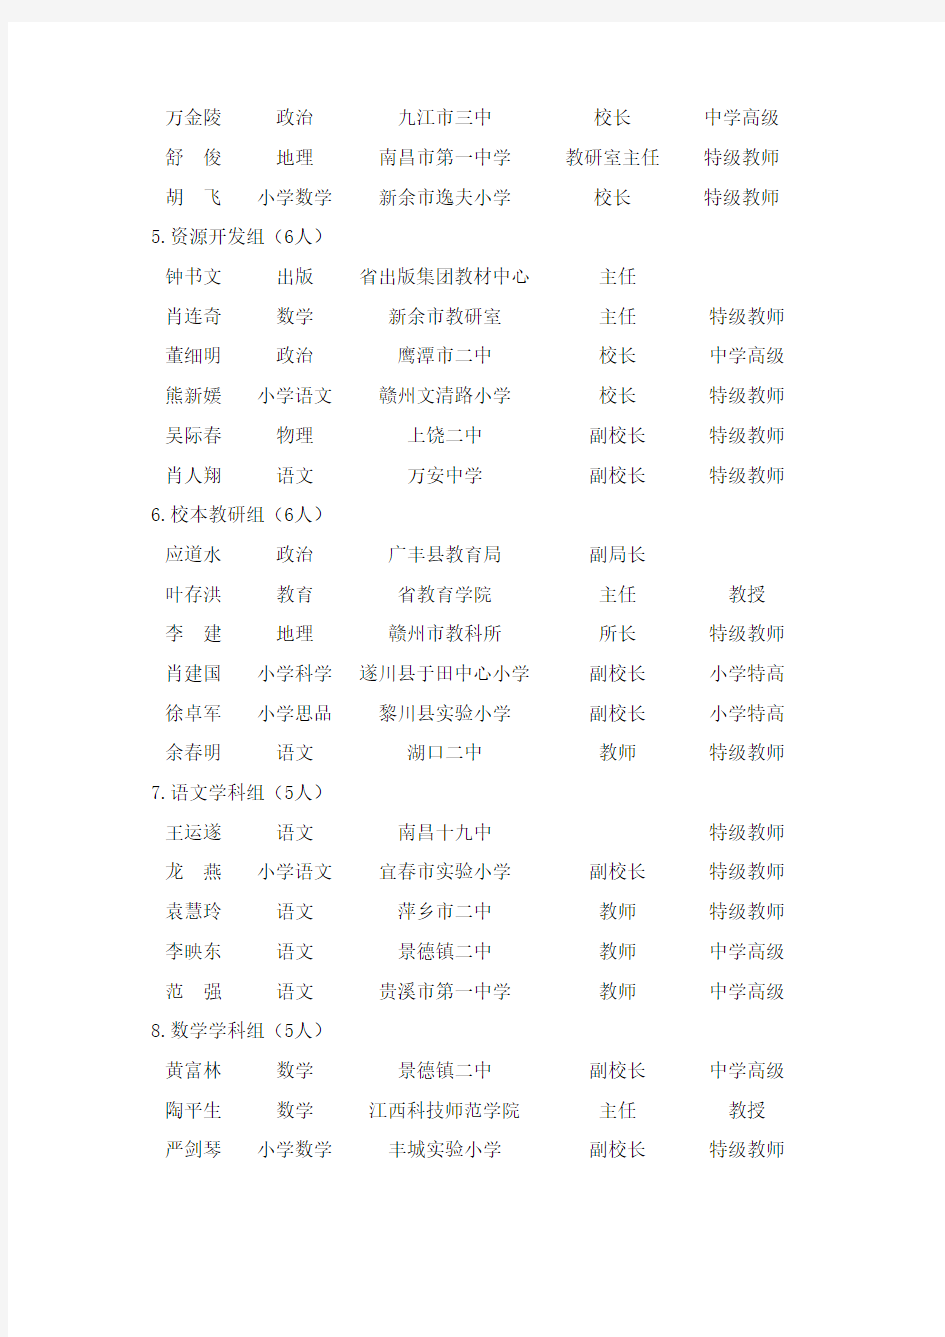 拟任江西省中小学教学指导委员会成员公示名单